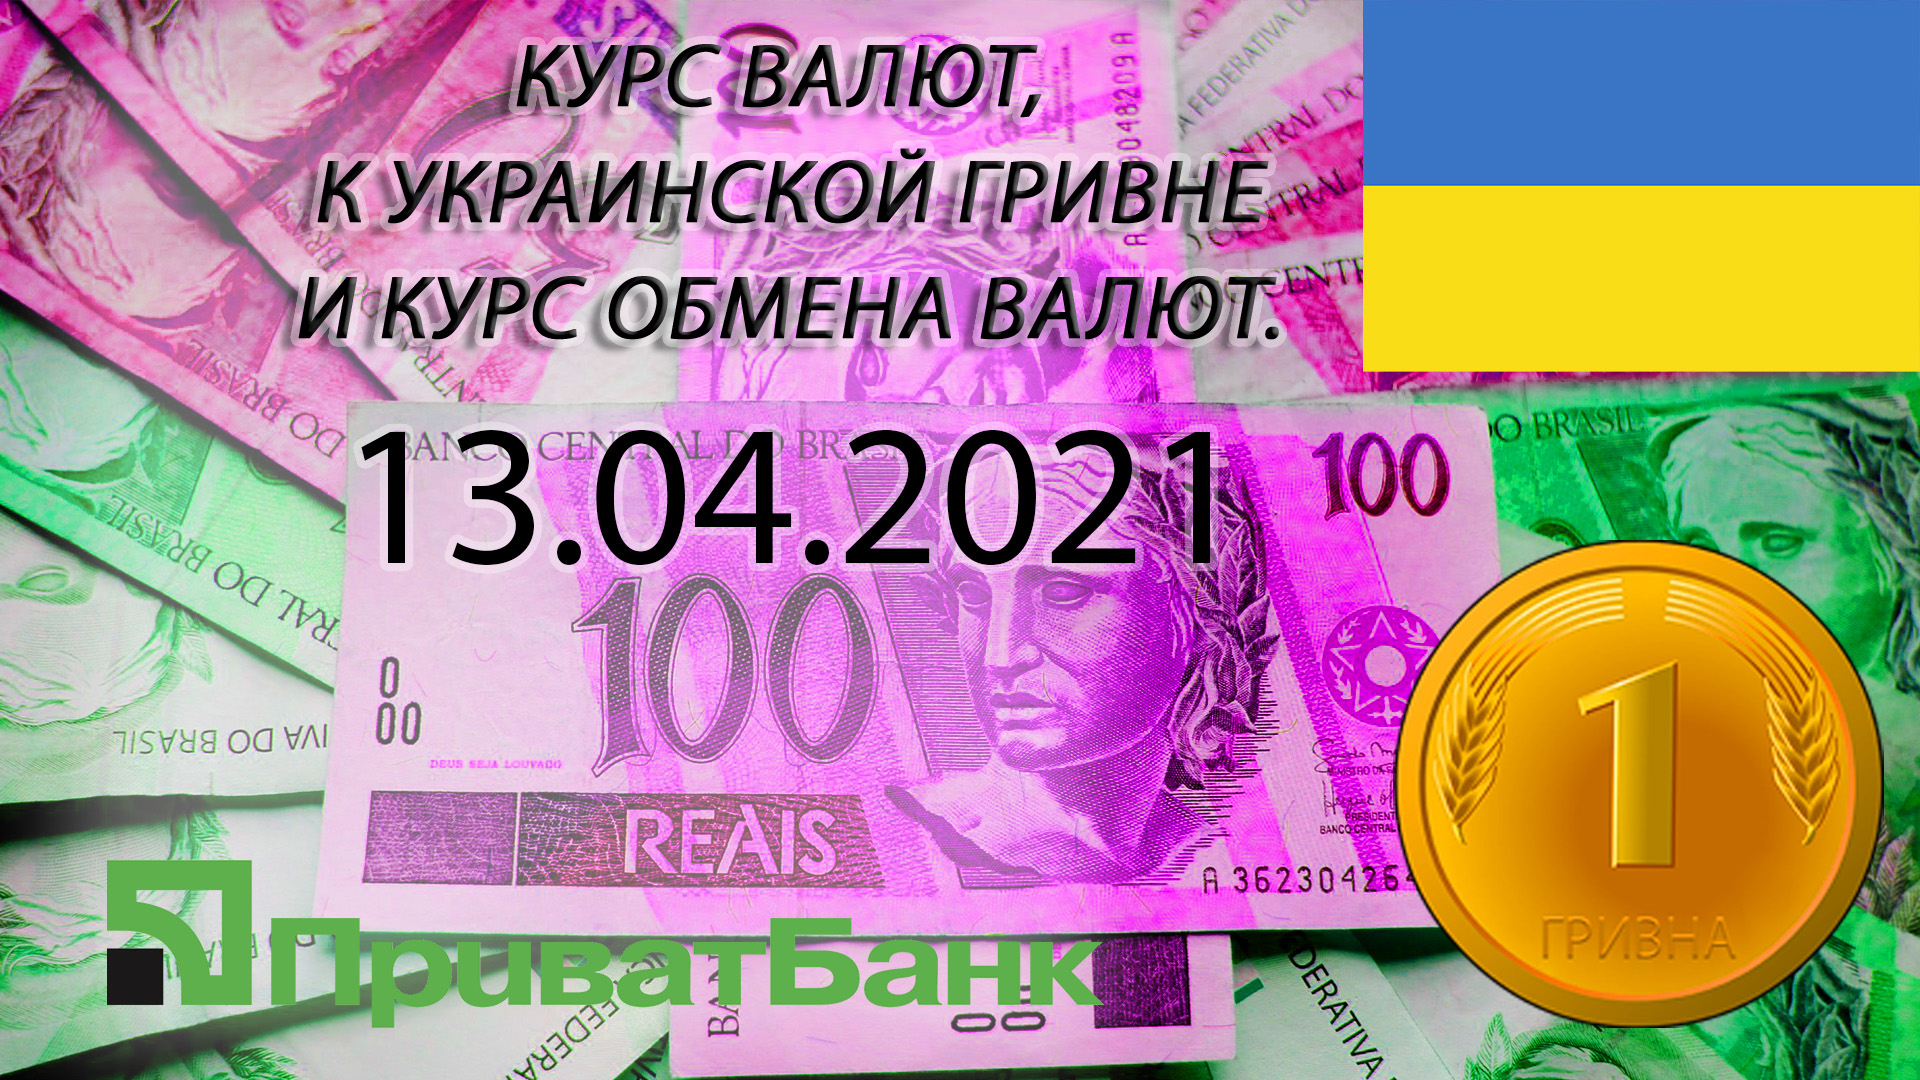 7 рублей в долларах